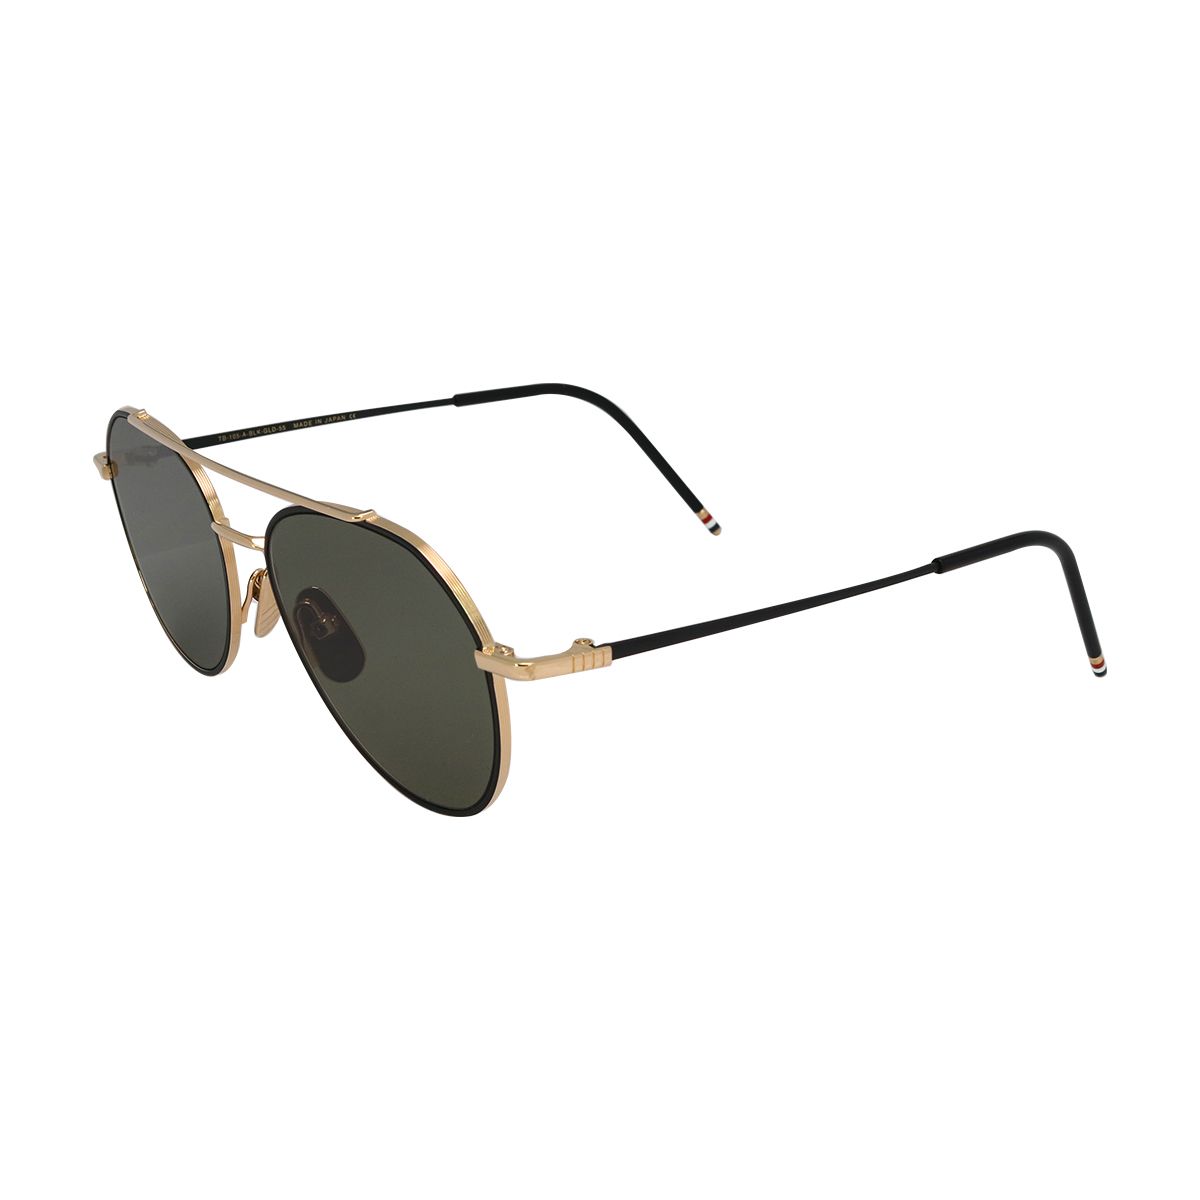 105 Pilot Sunglasses A - size 55